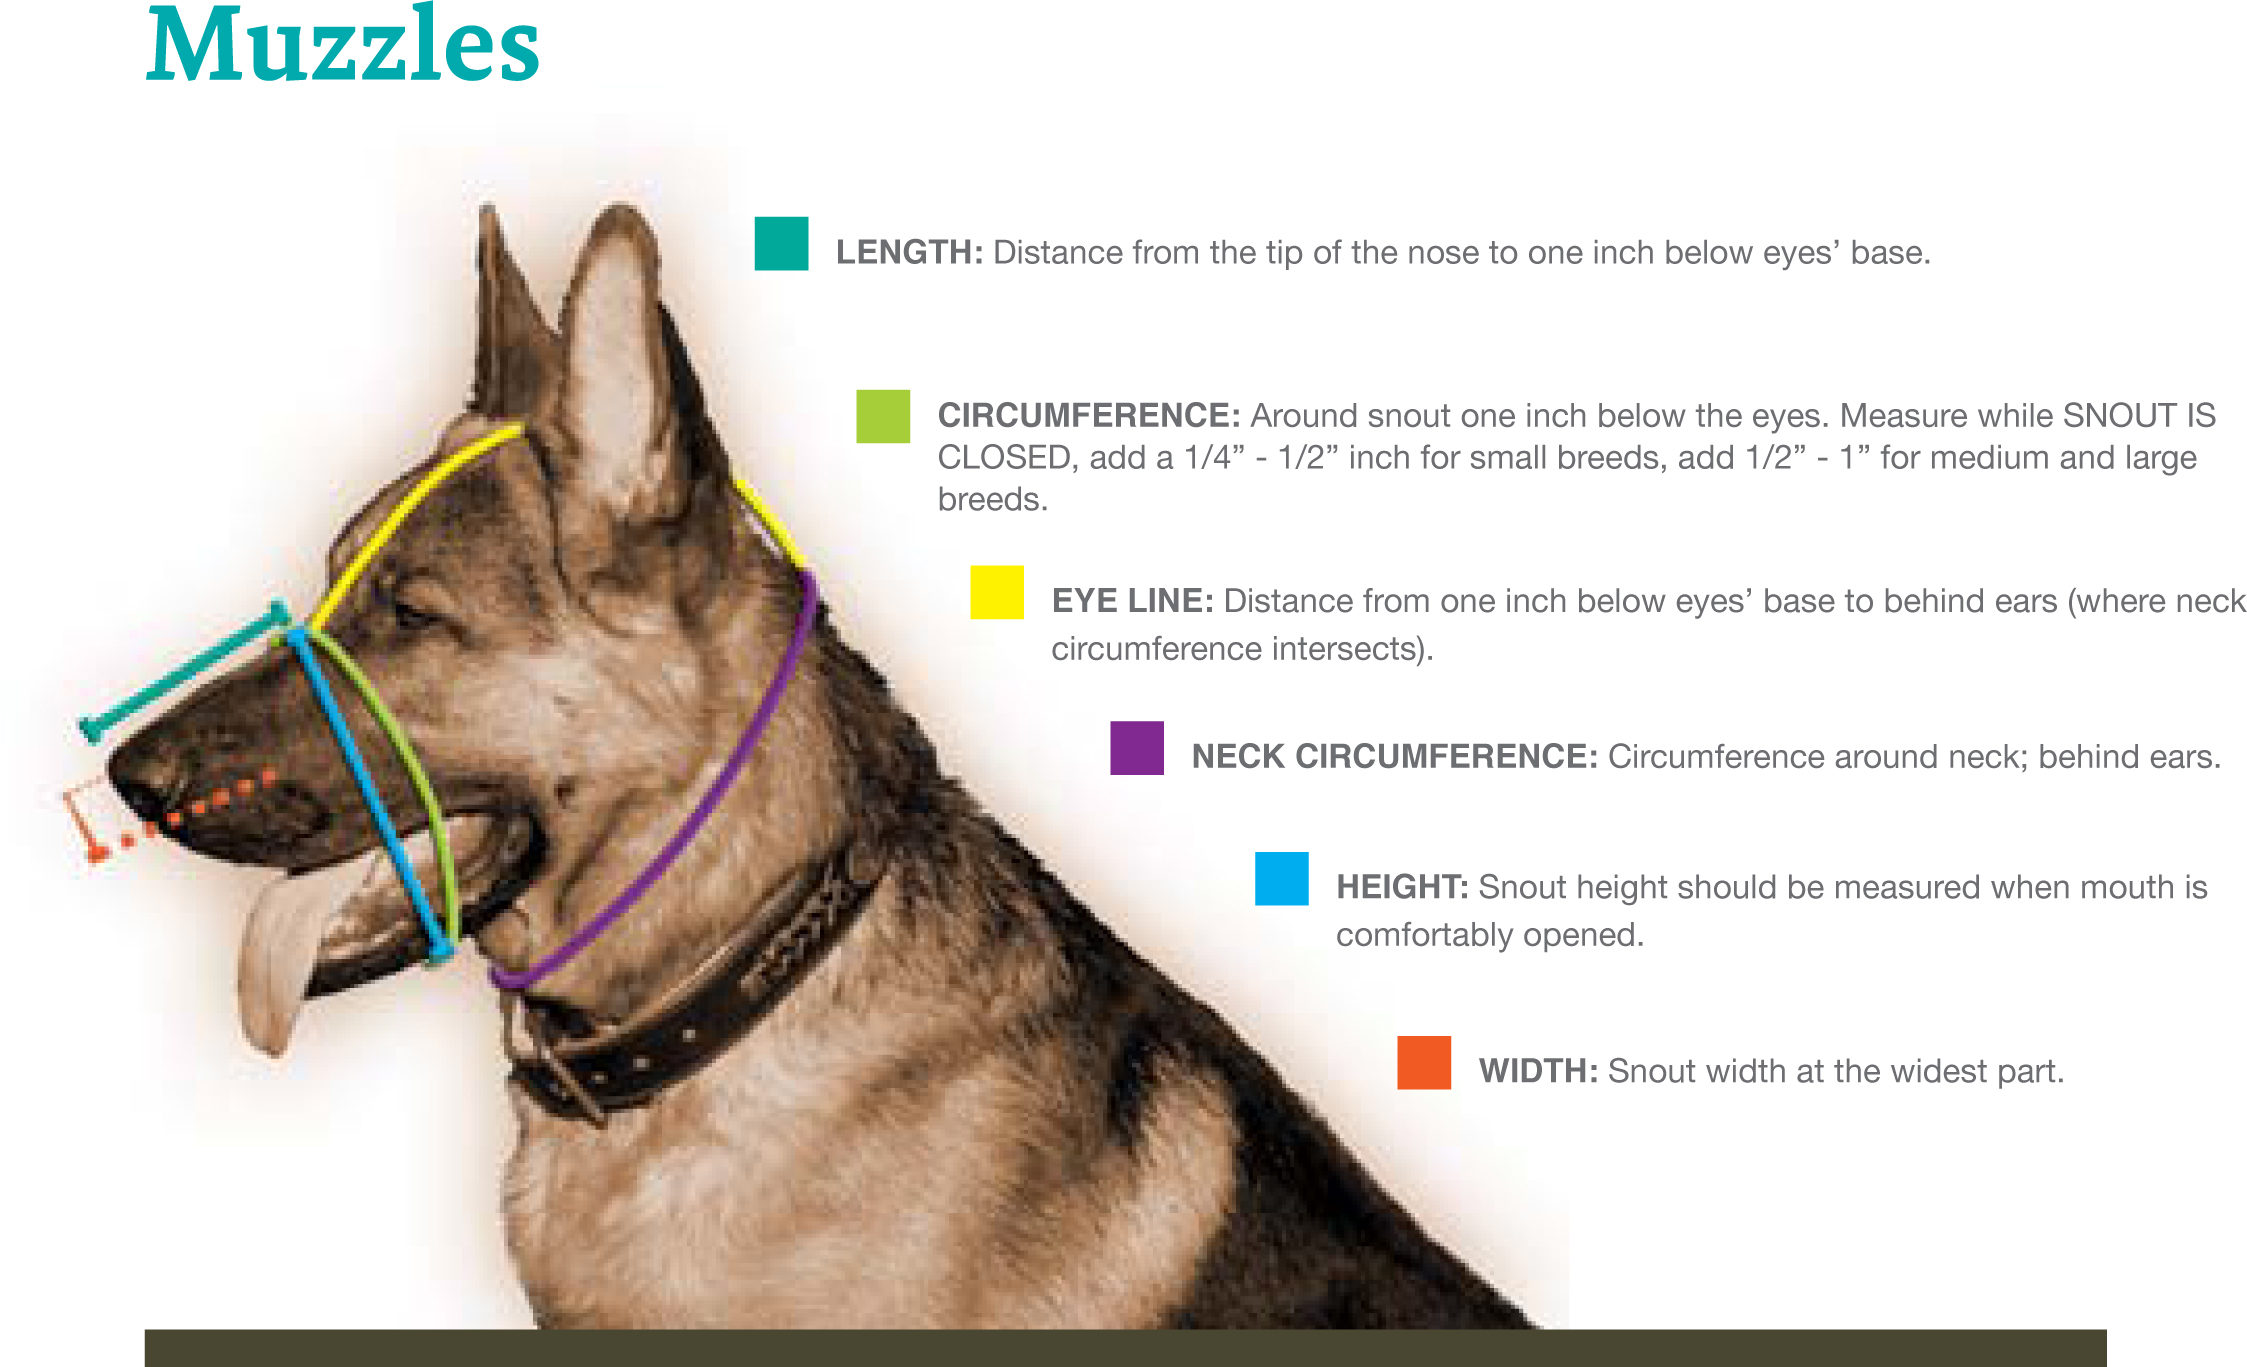 dog muzzle size chart